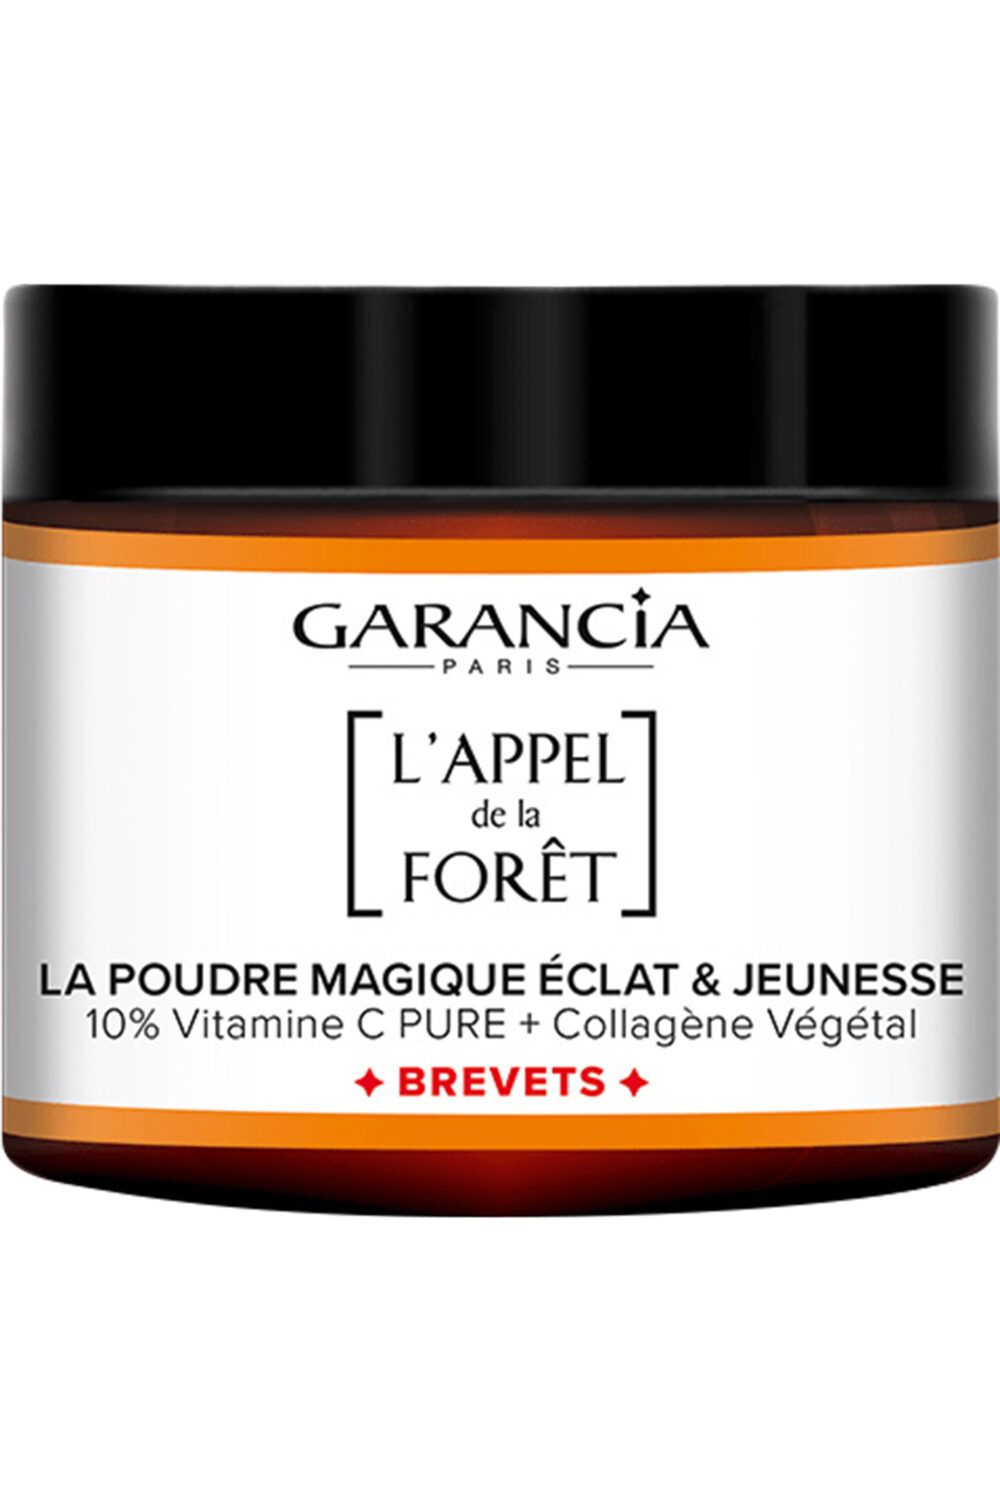 Garancia - La Poudre Magique Eclat & Jeunesse L’Appel de la Forêt La poudre magique